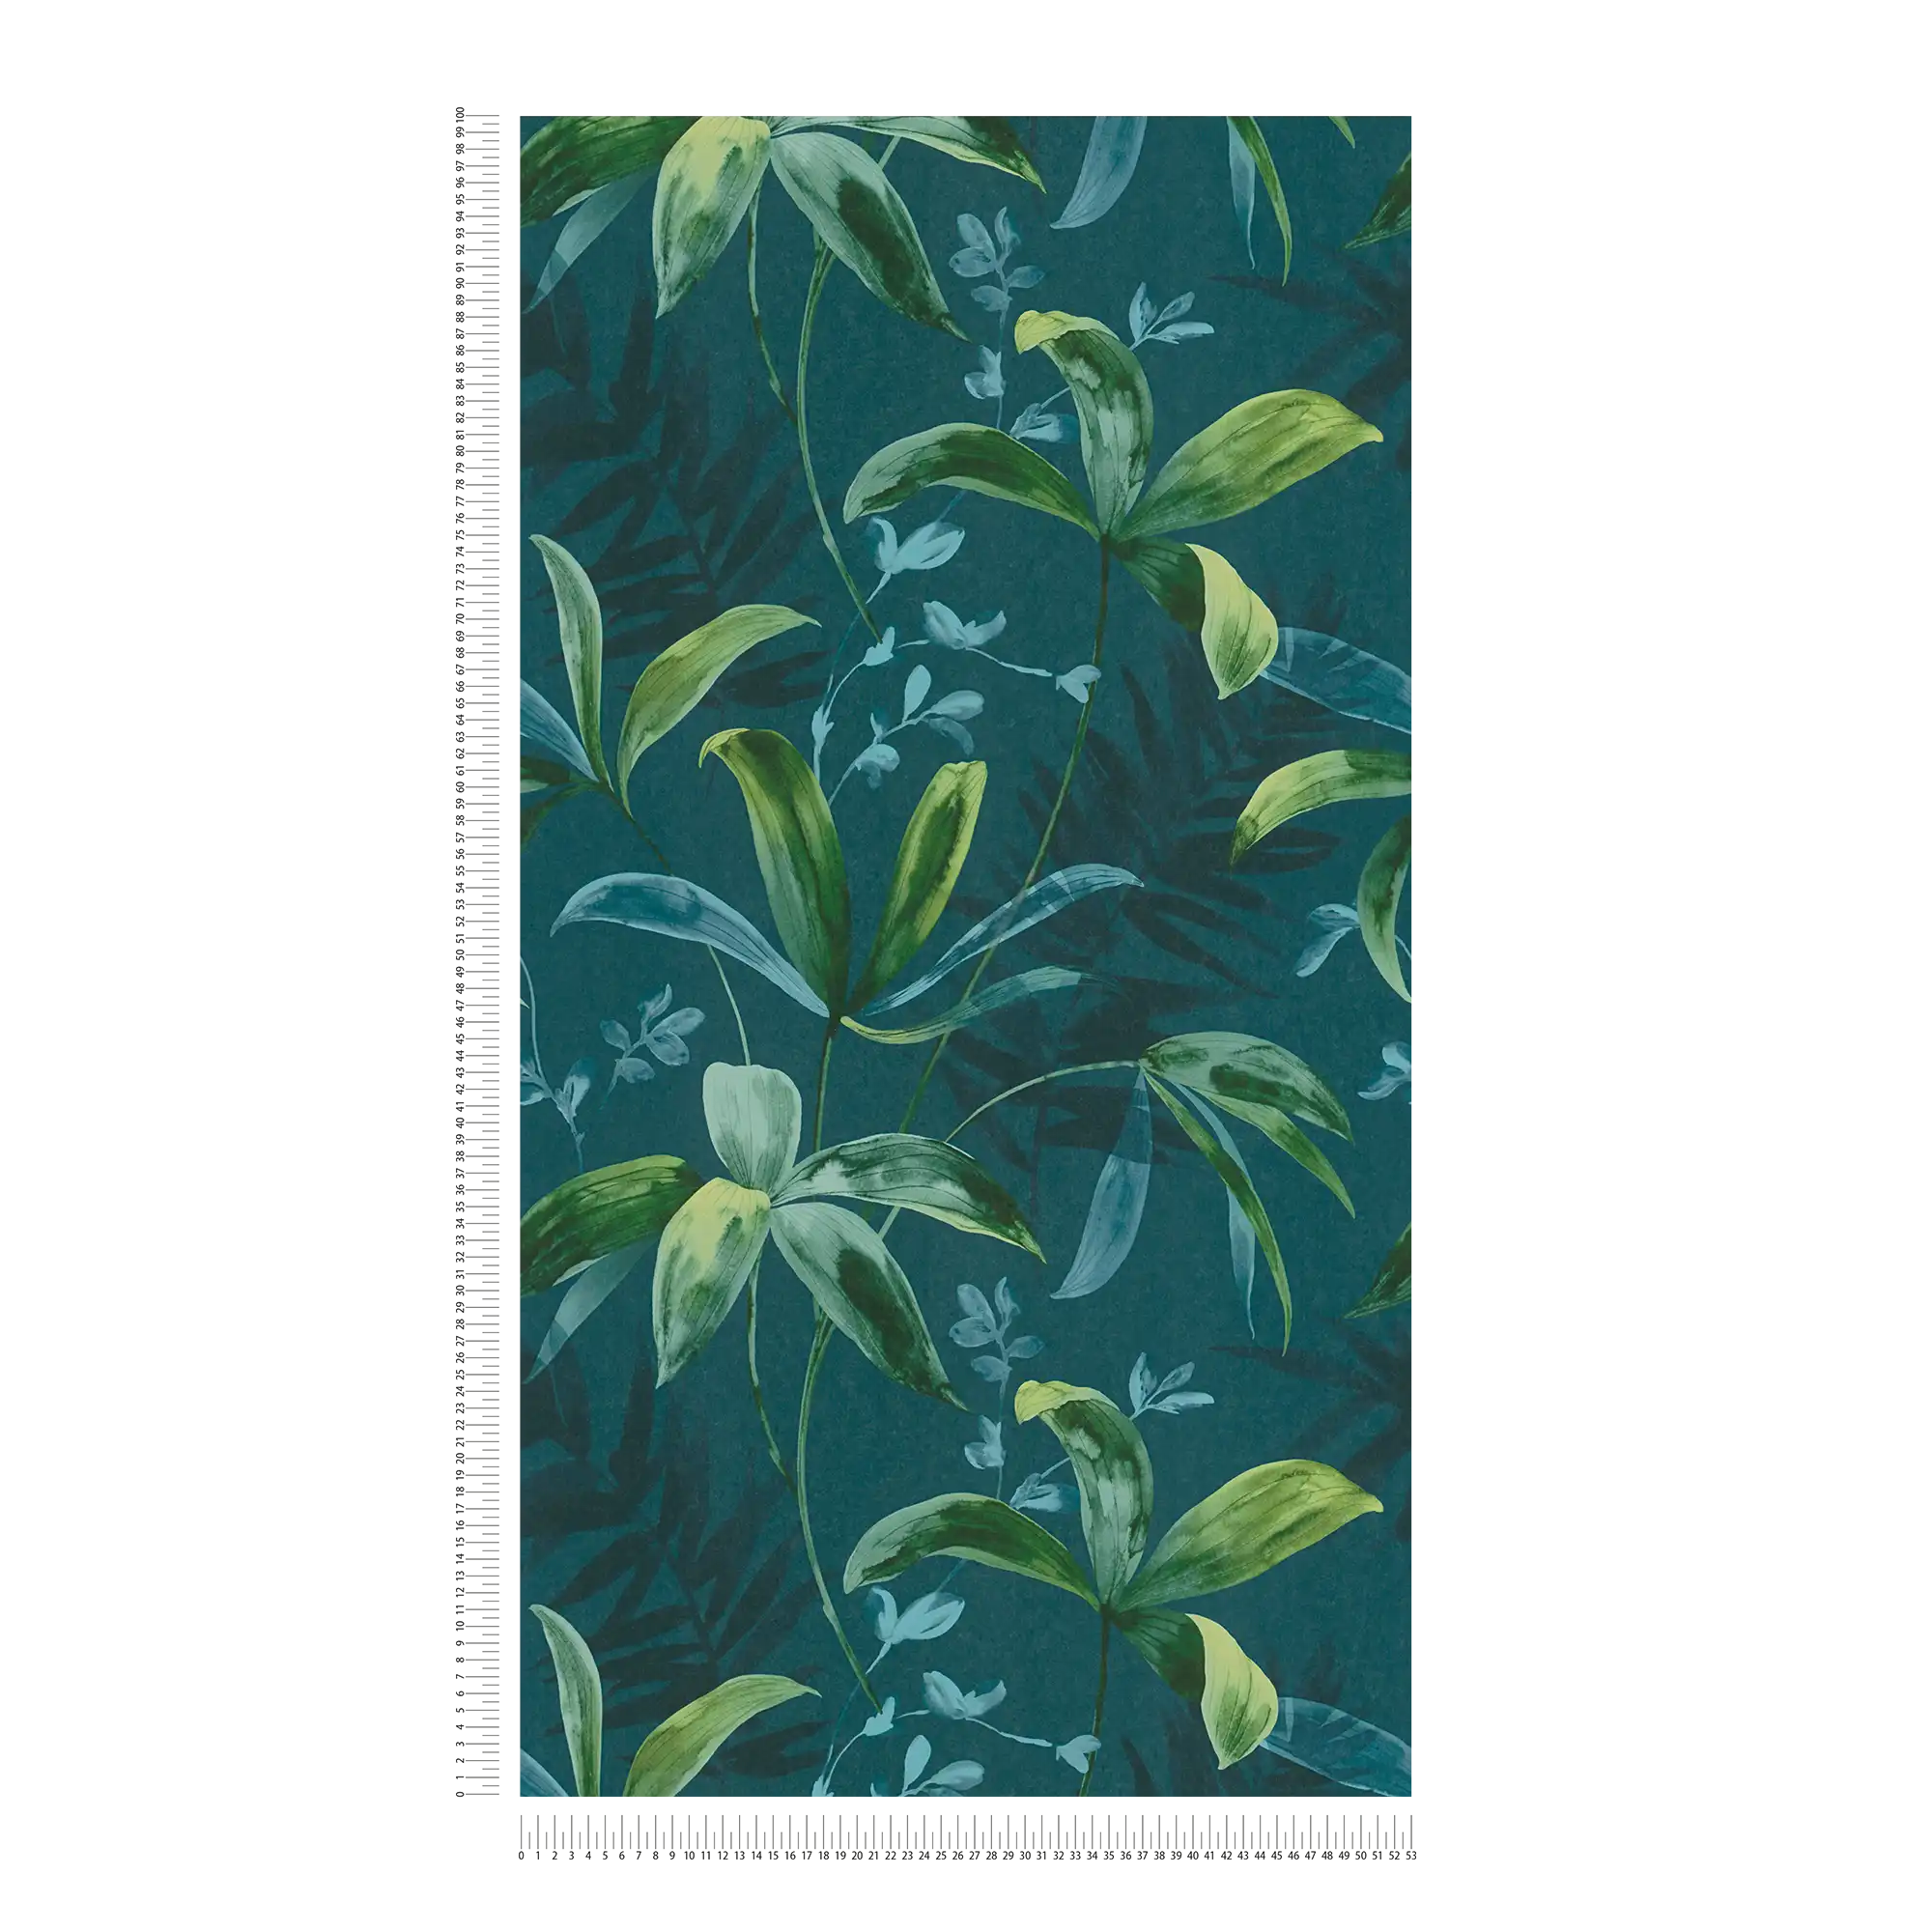             Carta da parati verde scuro con motivo di foglie in stile acquerello - Blu, Verde
        